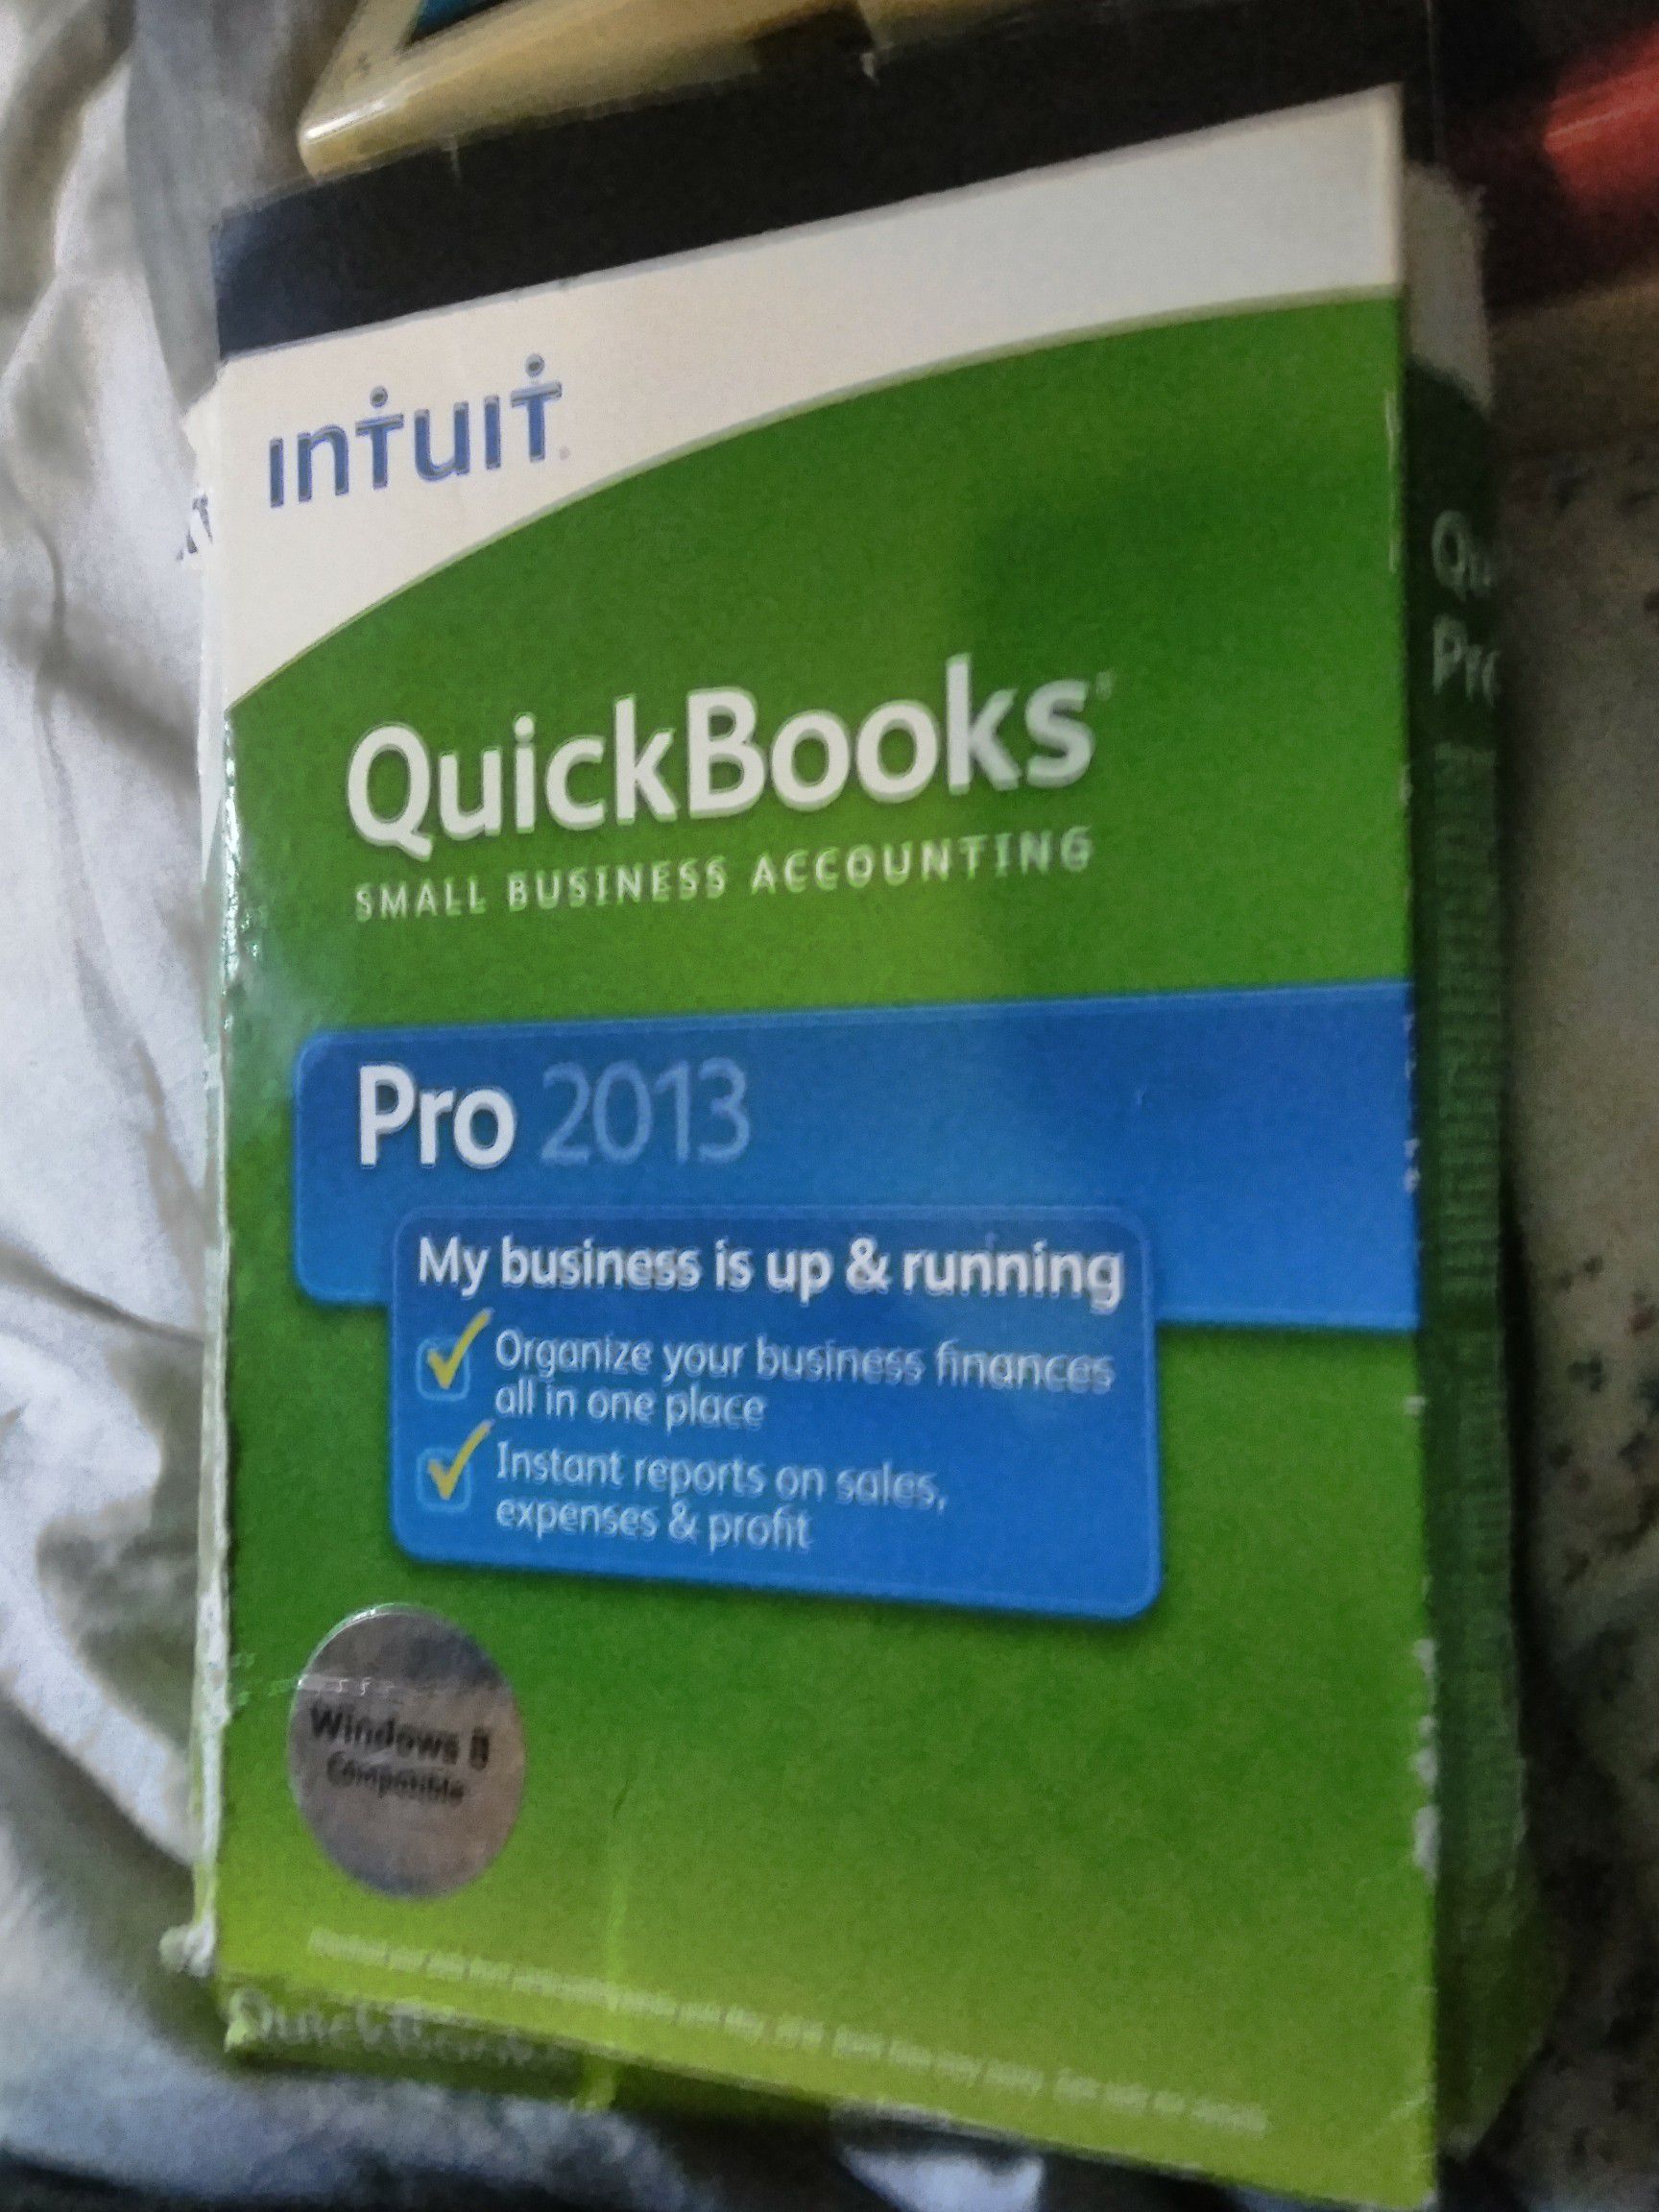 Quick books pro 2013